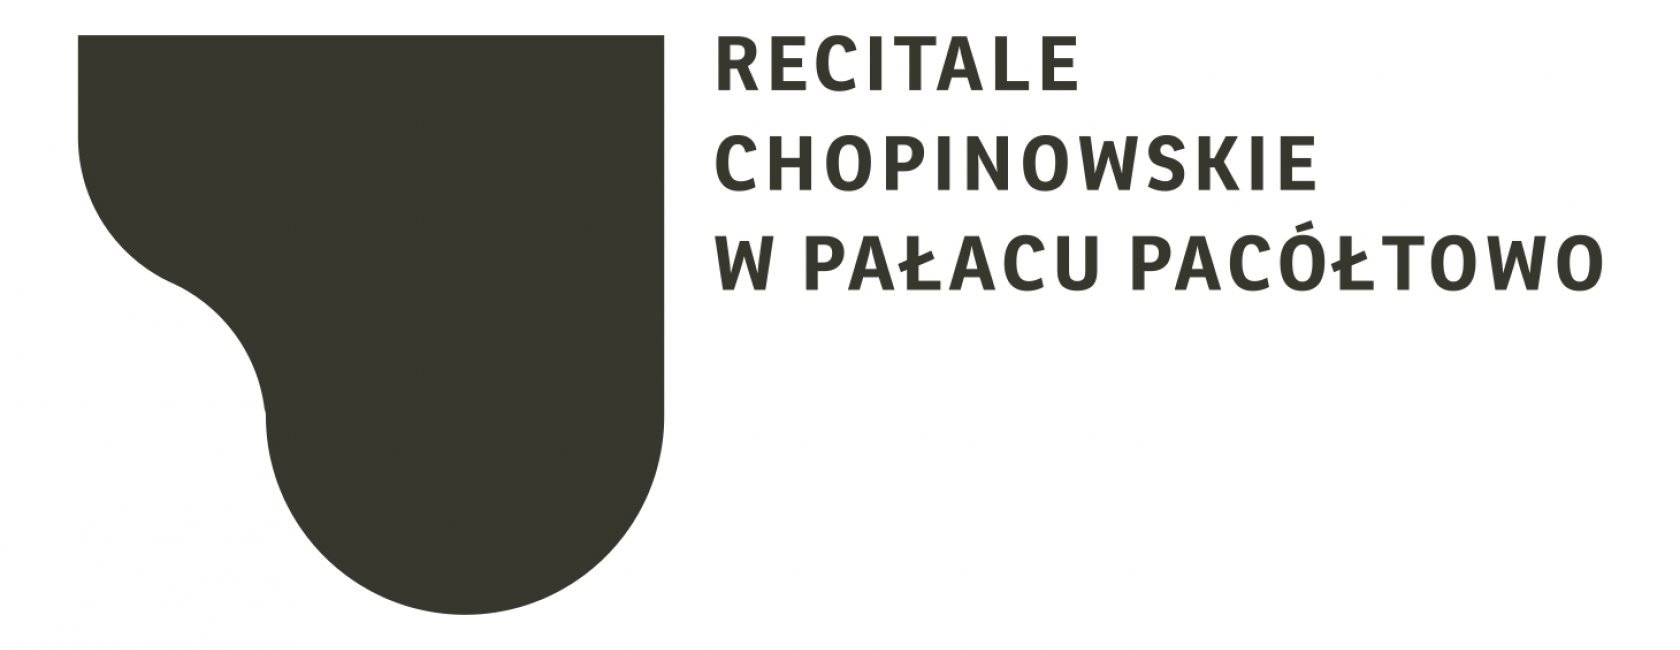 Recitale Chopinowskie w Pałacu Pacółtowo